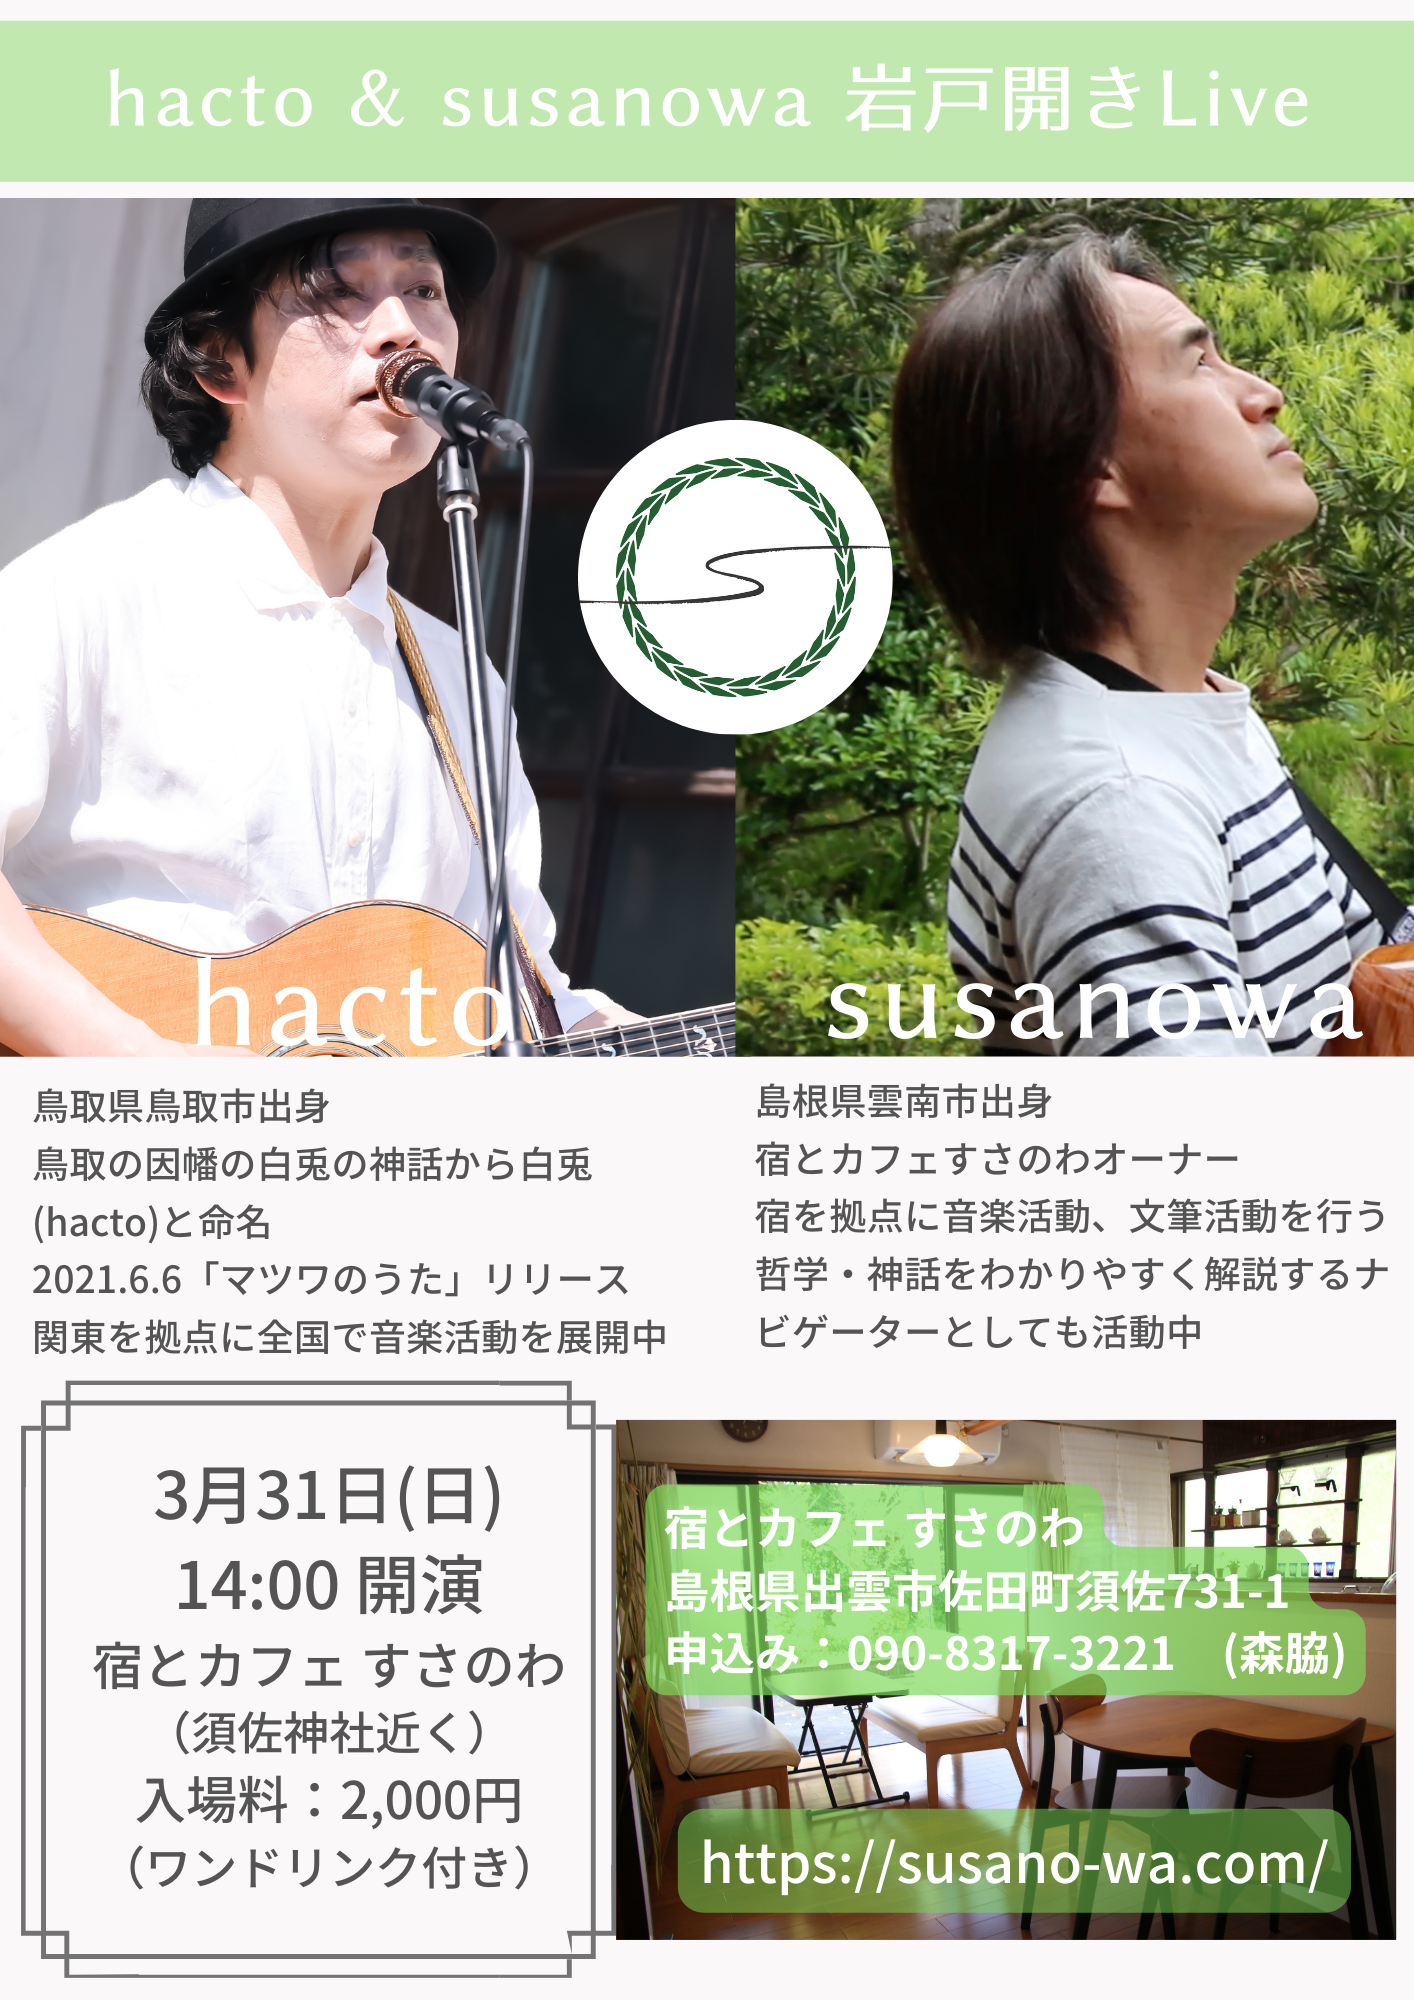 hacto & susanowa 岩戸開きLive 開催！！